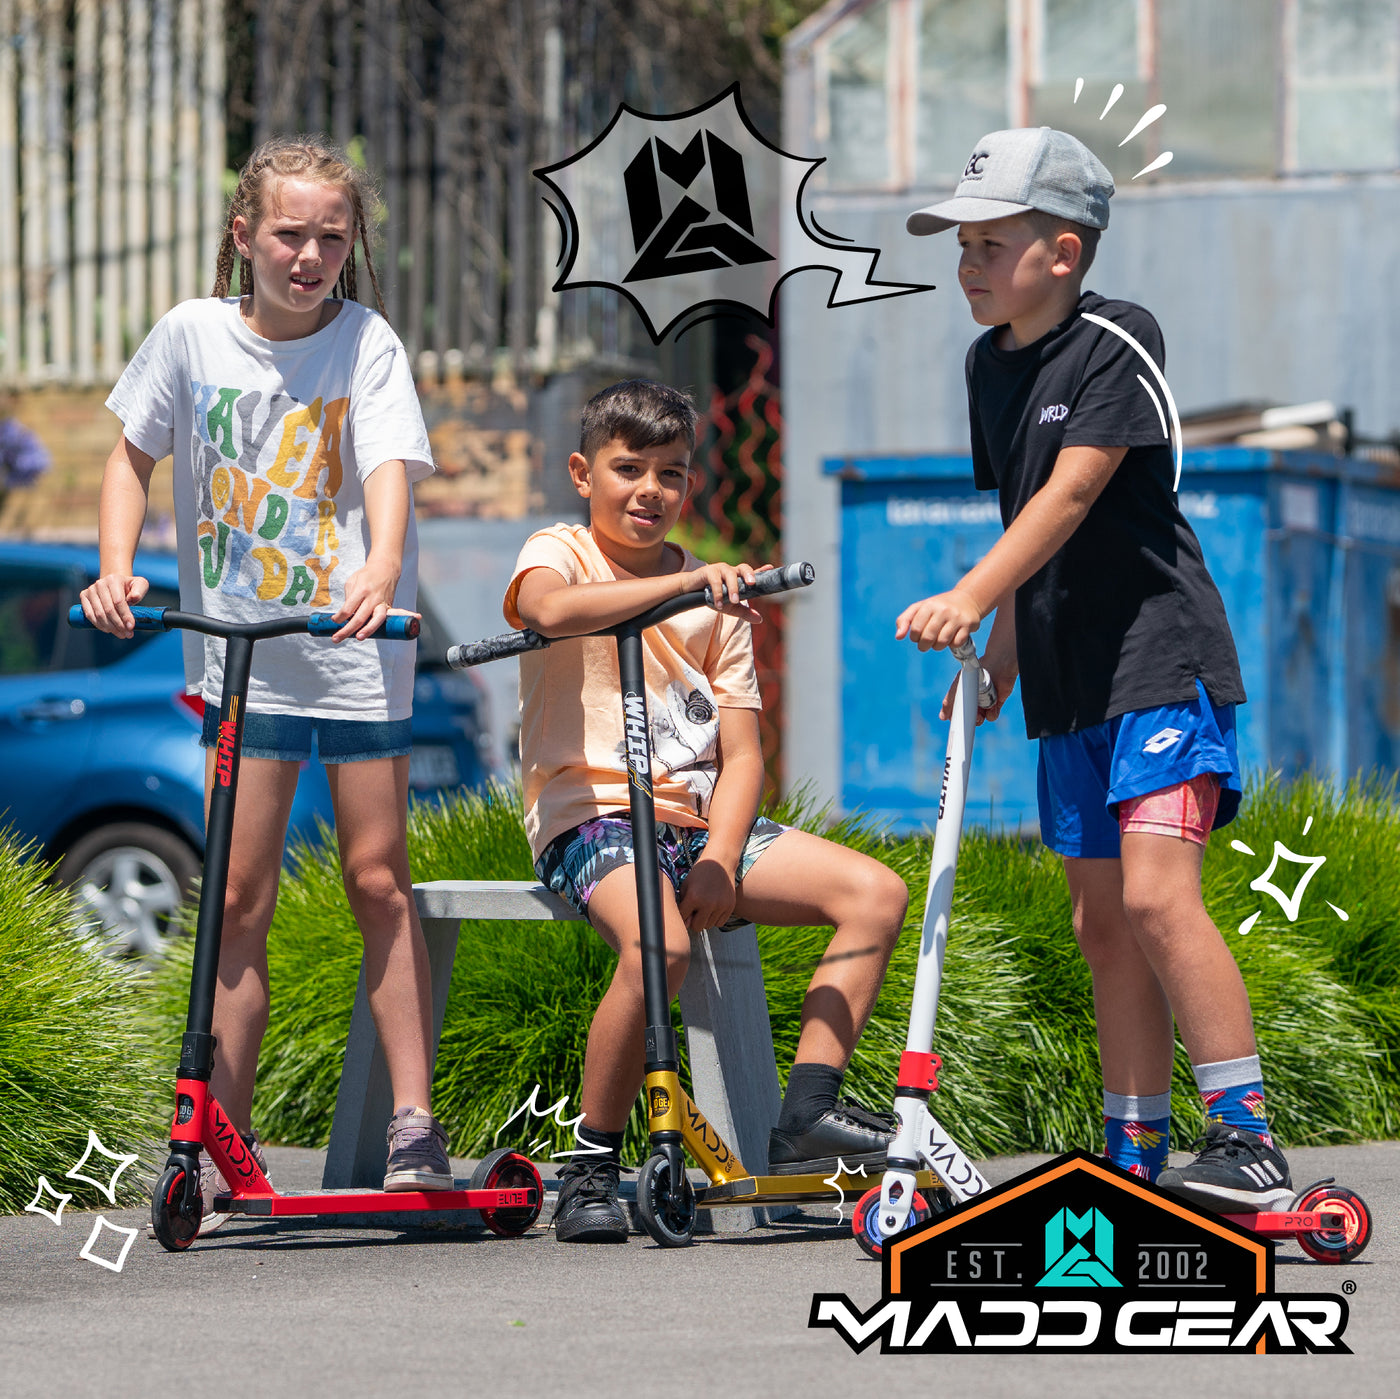 Madd Gear MGP MGX Pro P2 Trick Stunt Complete Scooter Kids Best Quality Orange Teal Orix